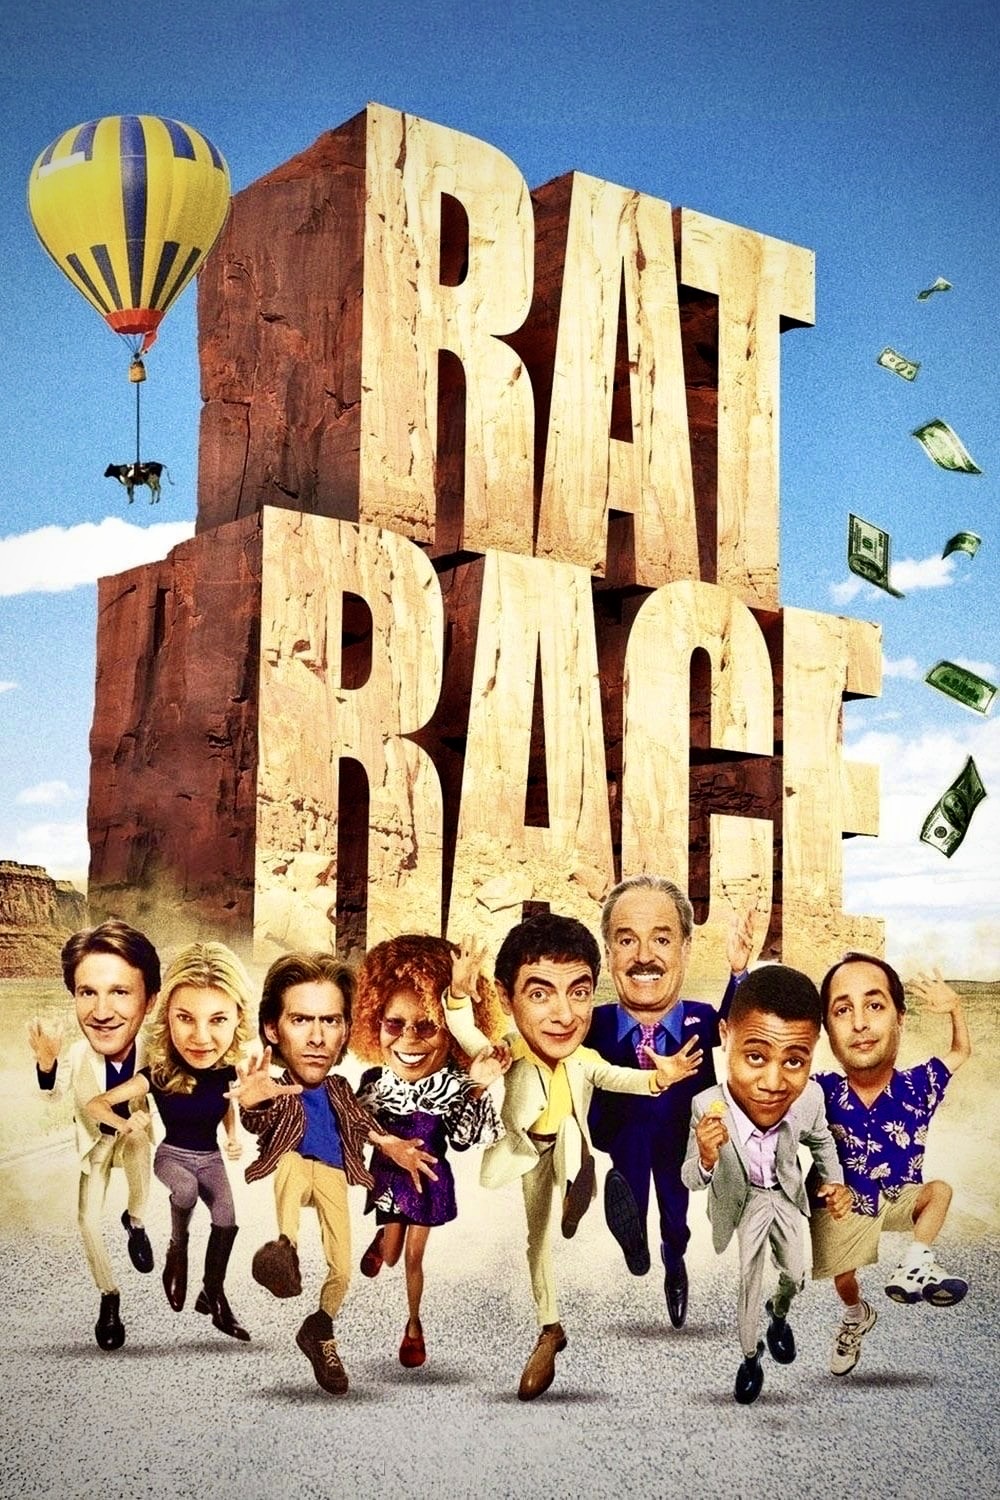 دانلود فیلم Rat Race 2001